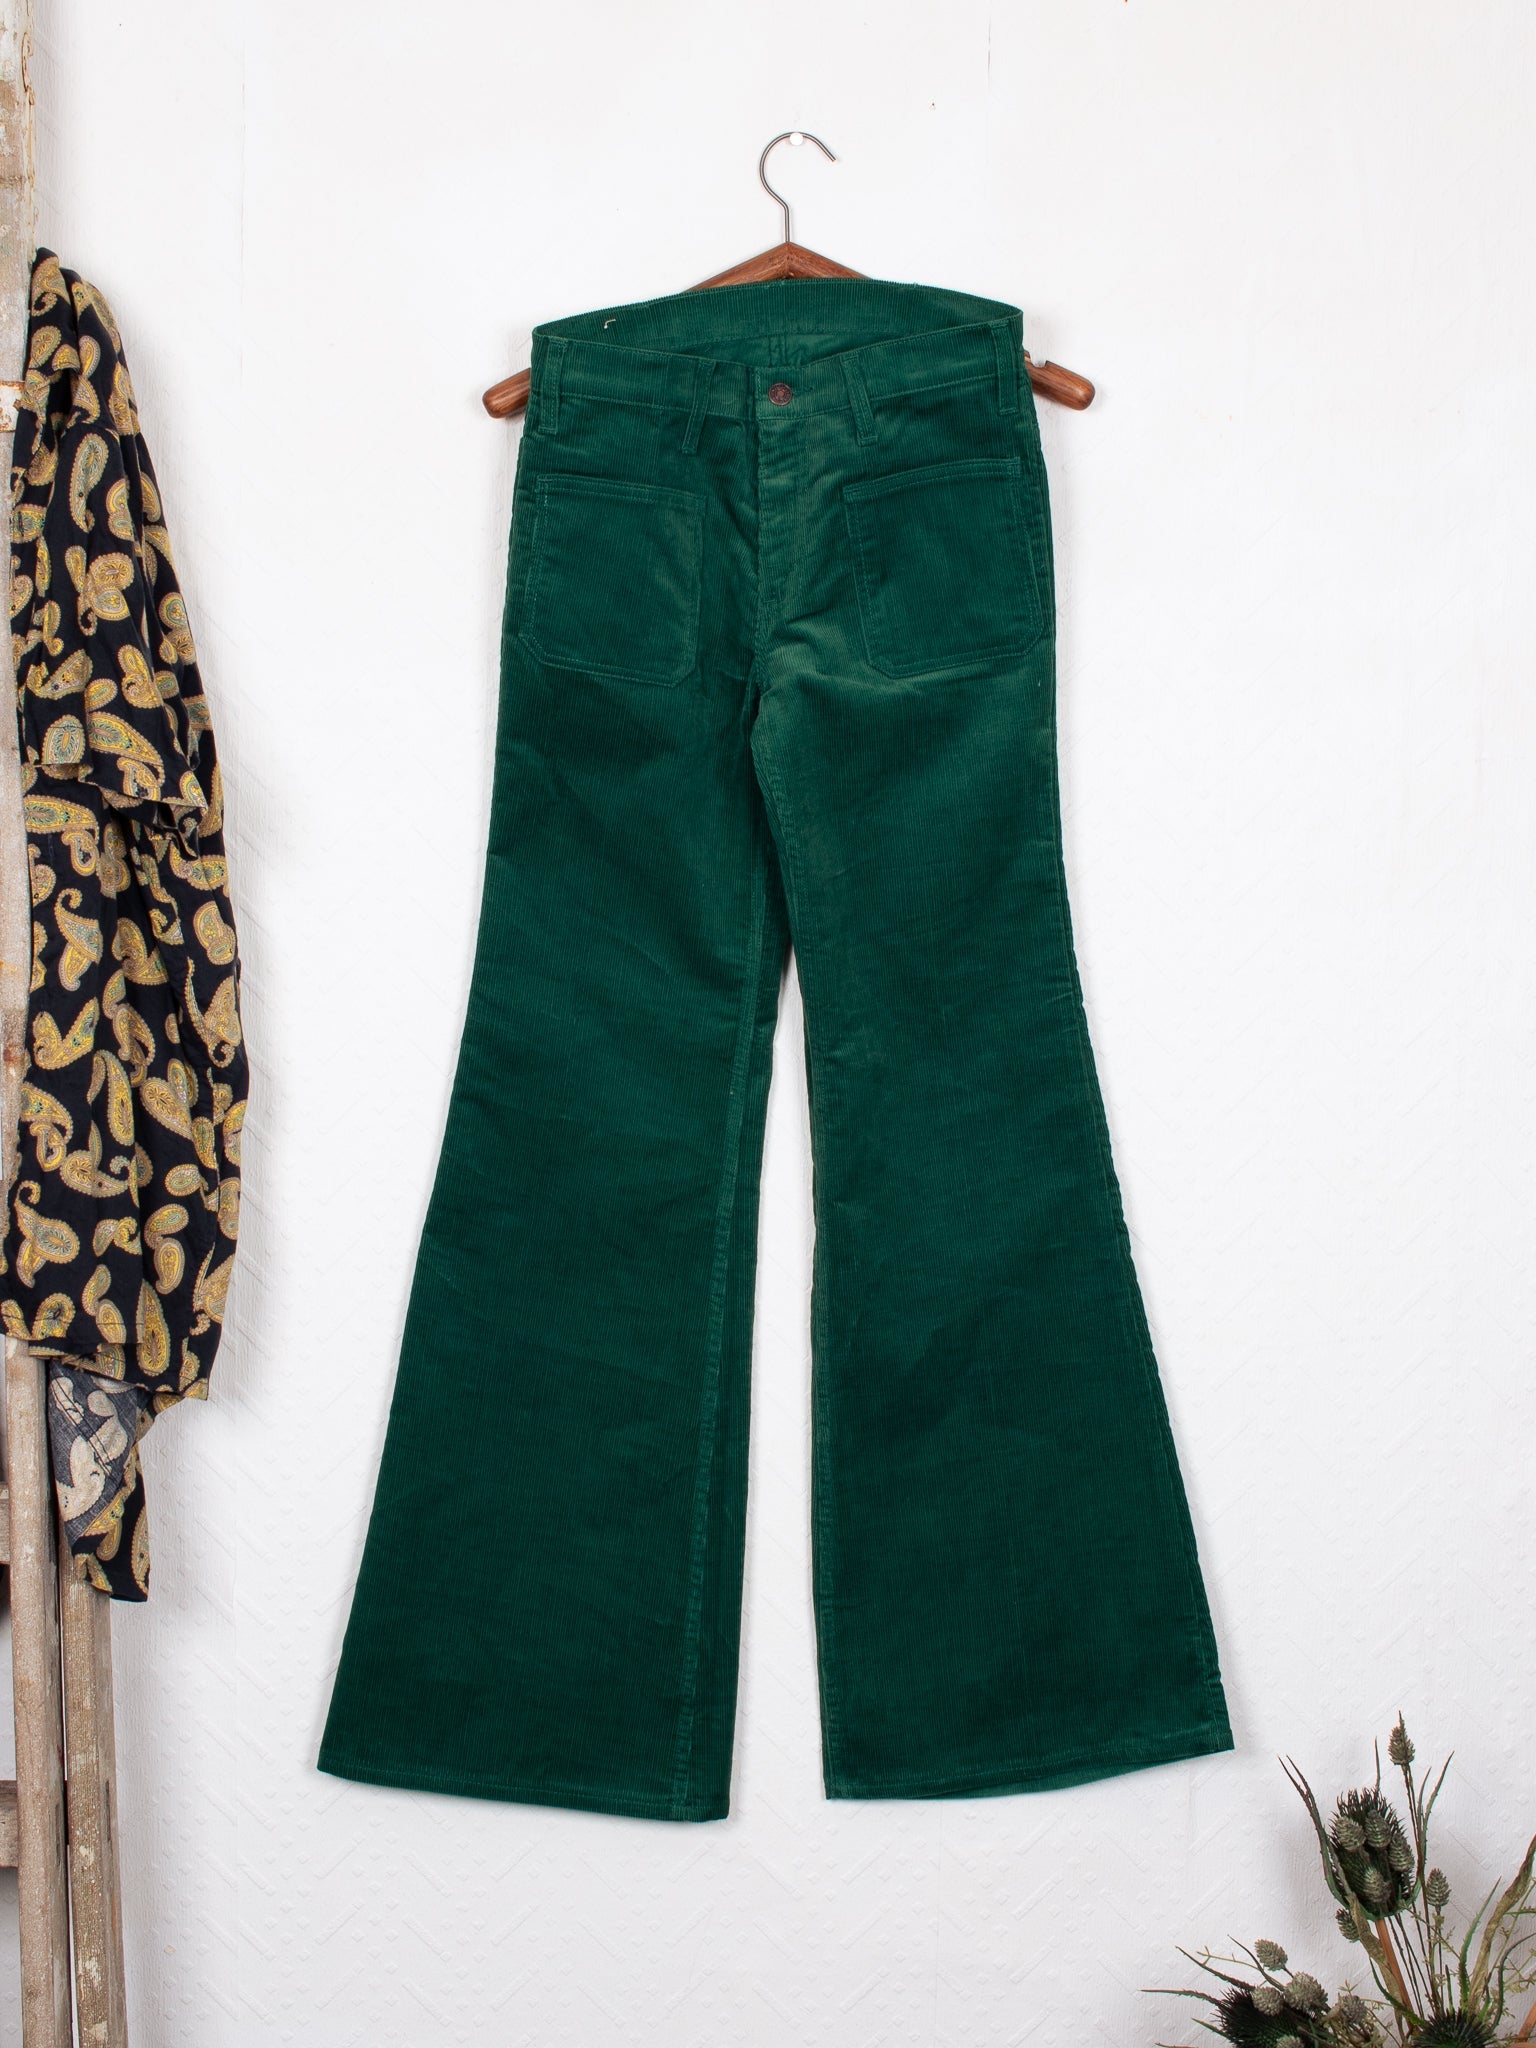 【ユーロ安】70s LEVIS 609 BIG-E vintage bush pants パンツ